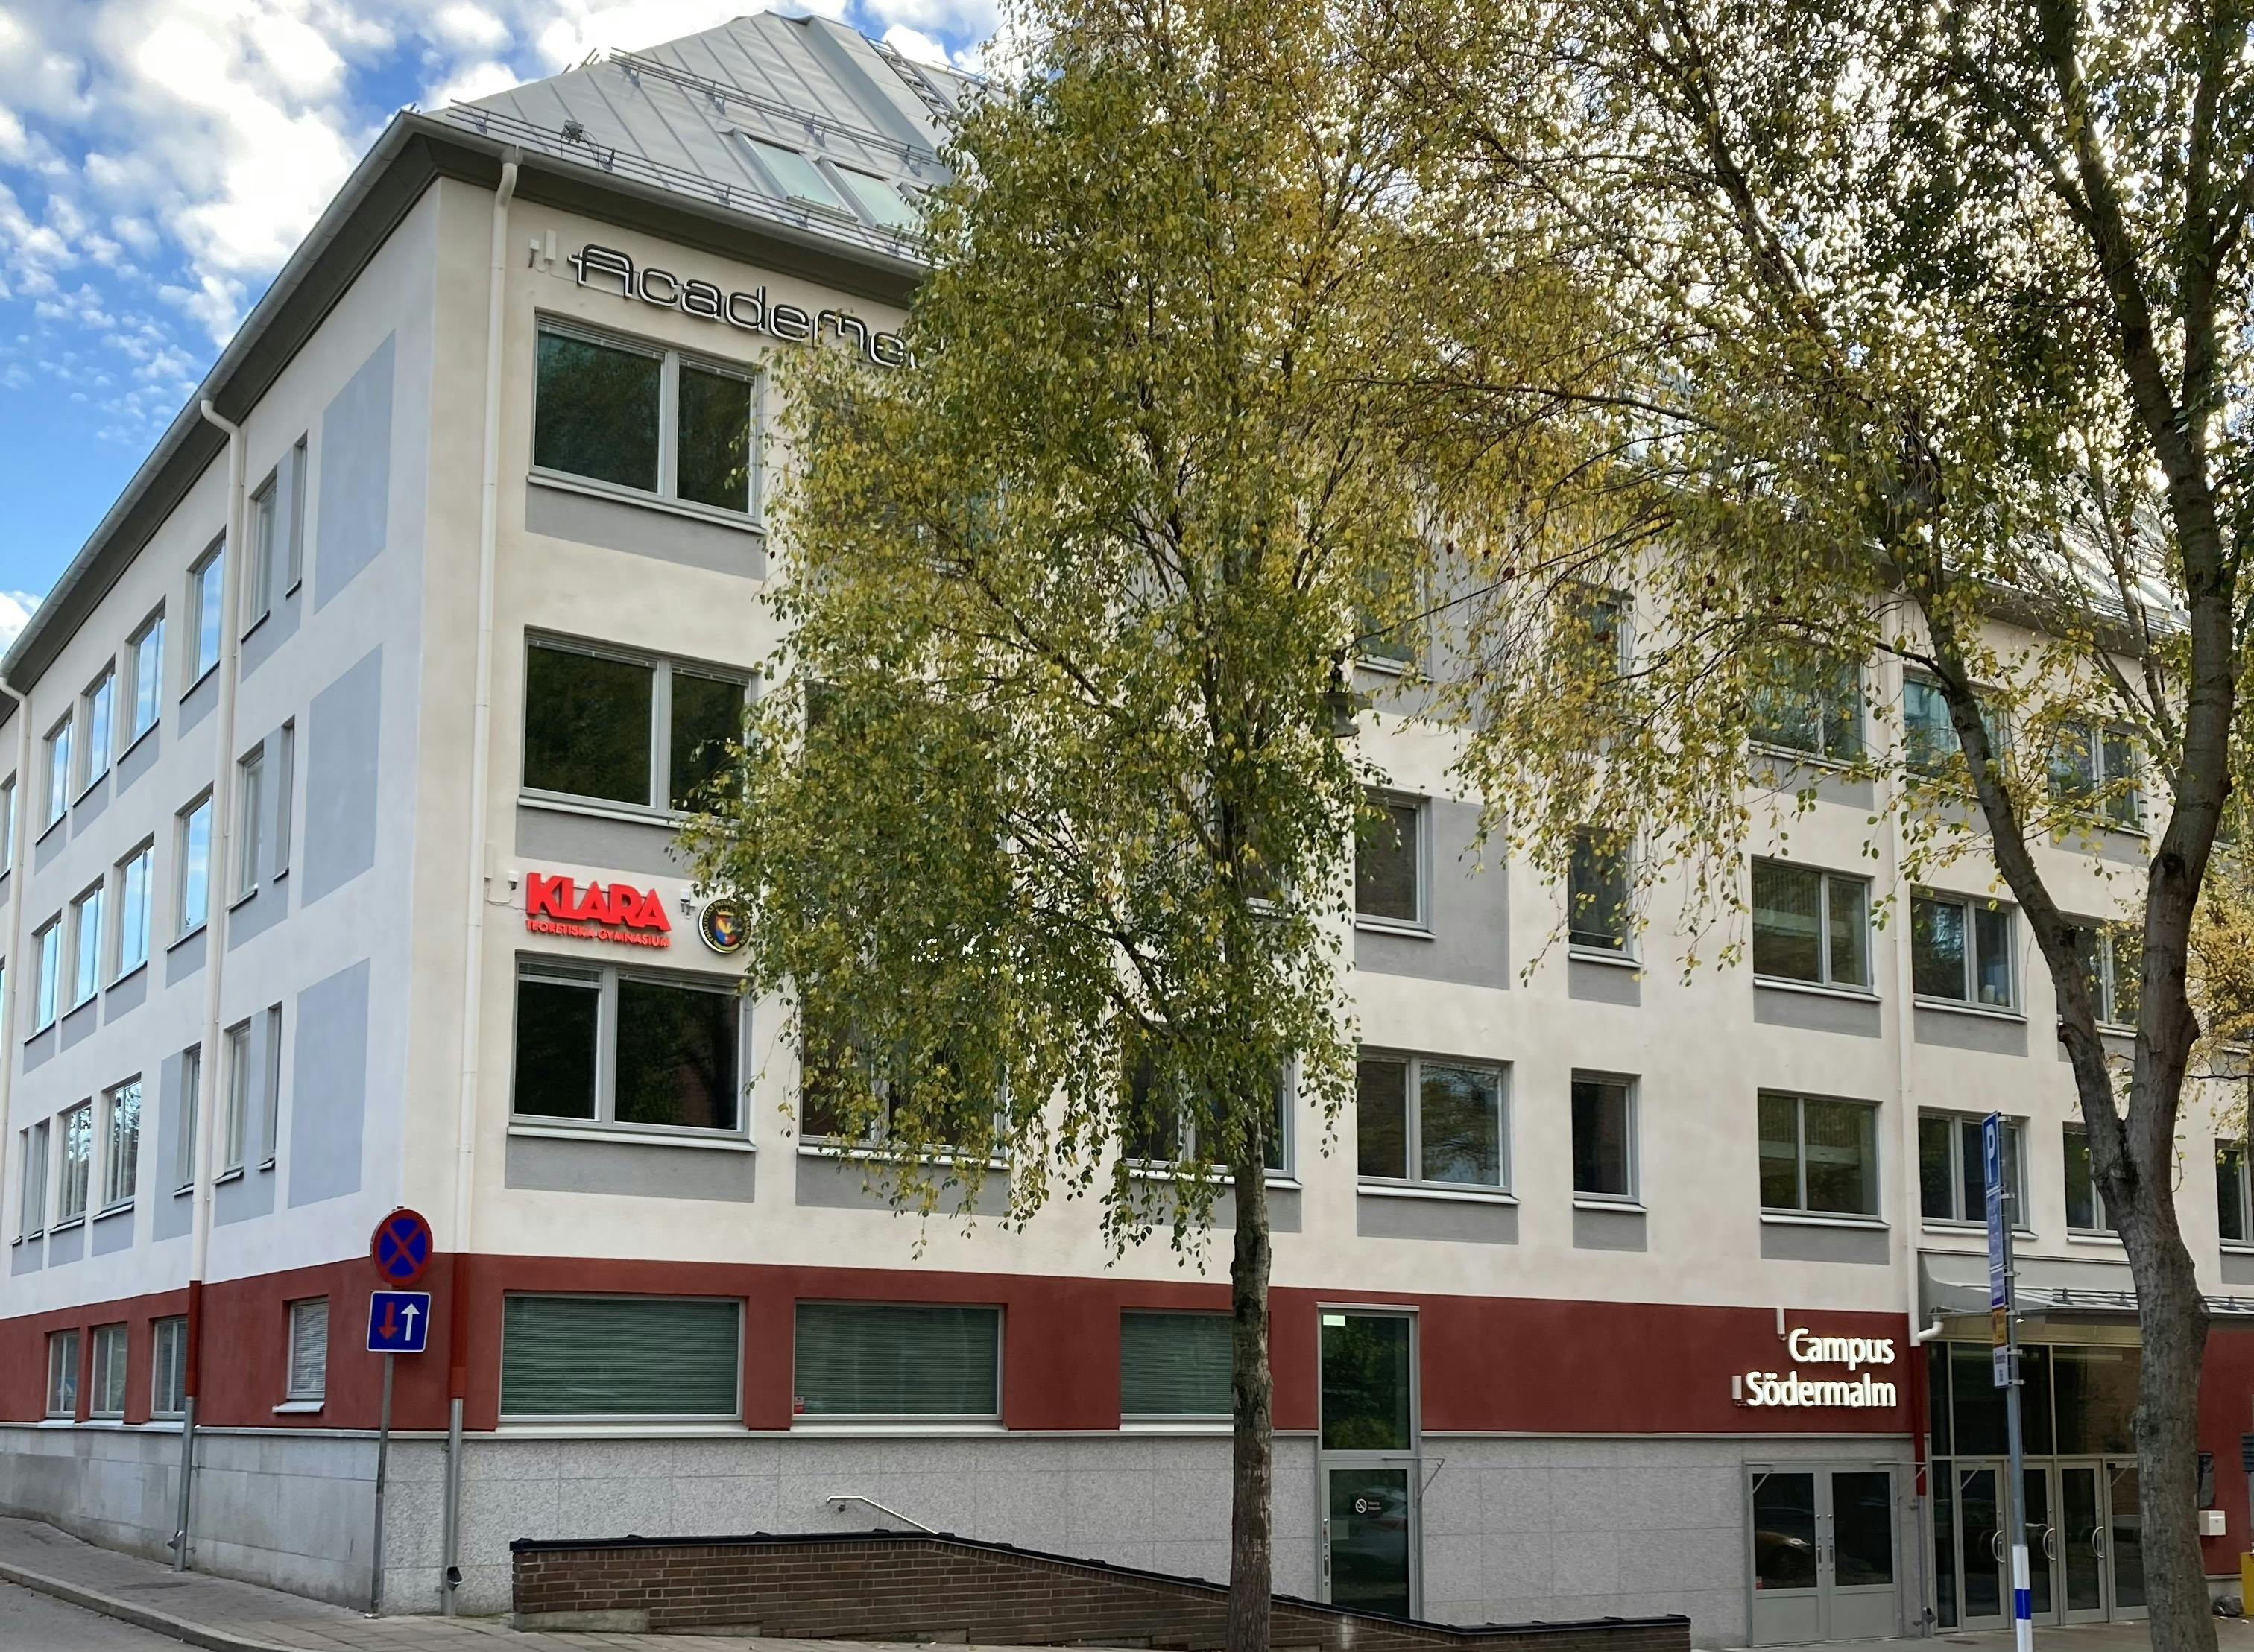 KLARA Teoretiska Gymnasium Södras skolbyggnad i Campus Södermalm.